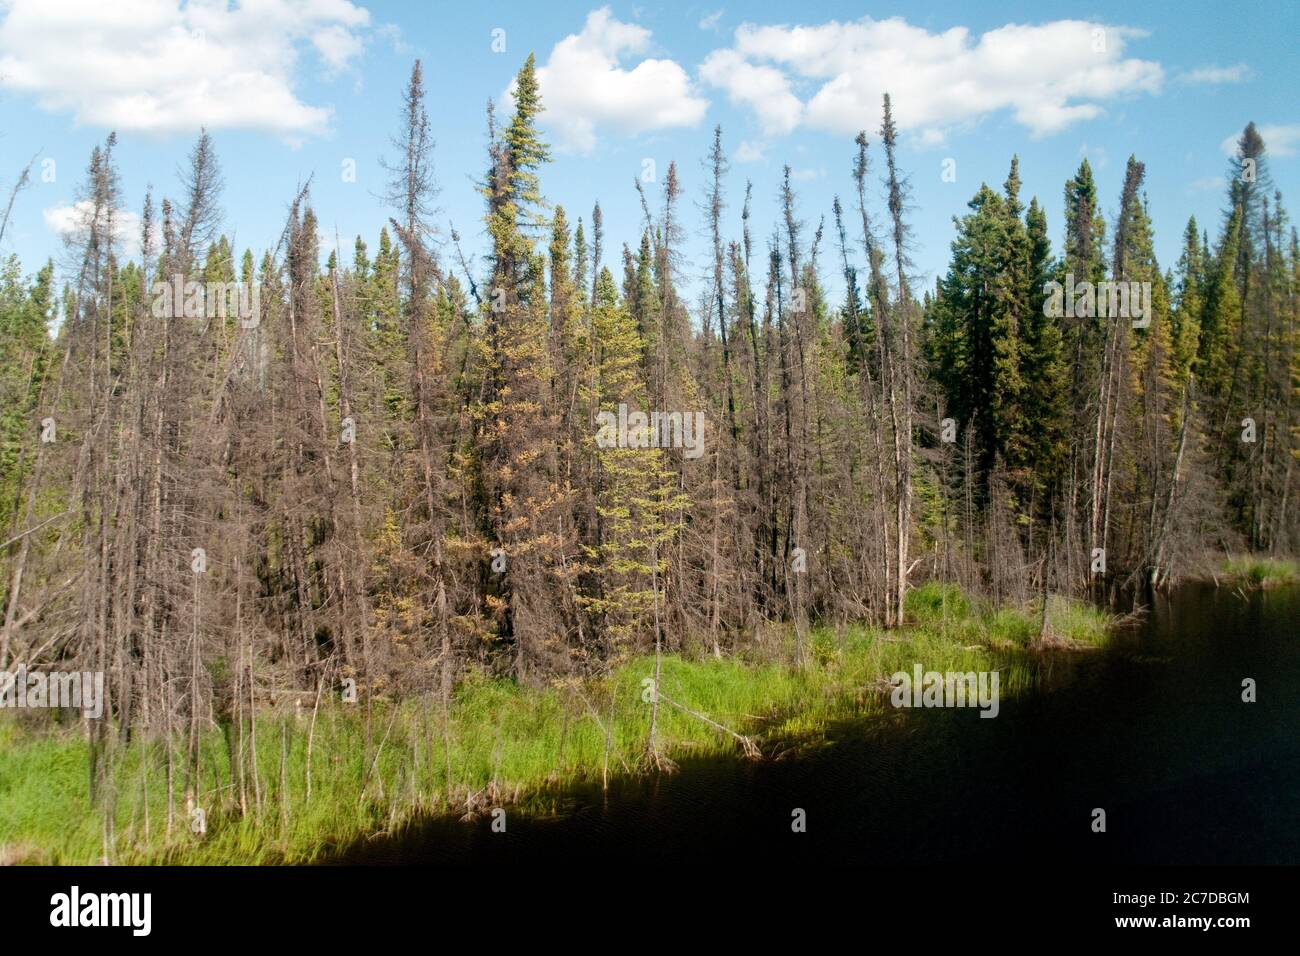 Humedales, pantanos y bosques de coníferas en el bosque boreal remoto desierto cerca de las Pas, norte de Manitoba, Canadá. Foto de stock